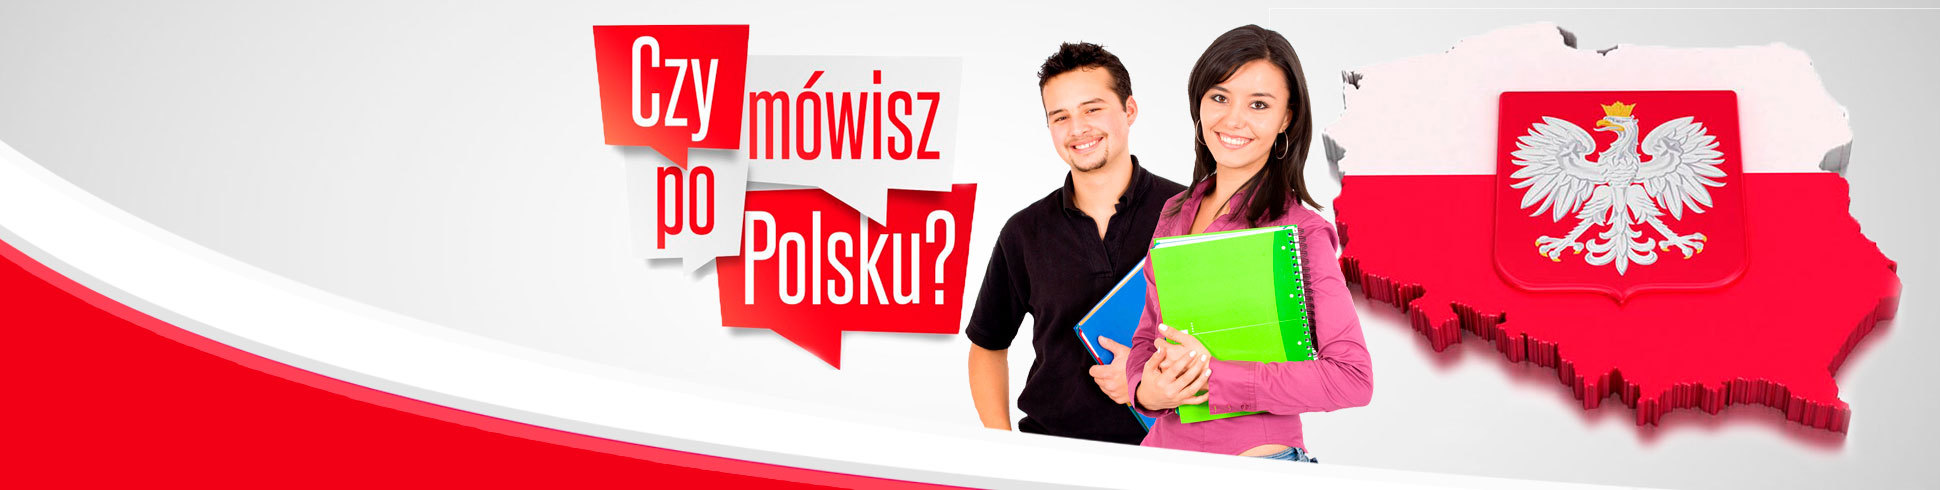 Двухнедельный интенсивный курс польского языка.